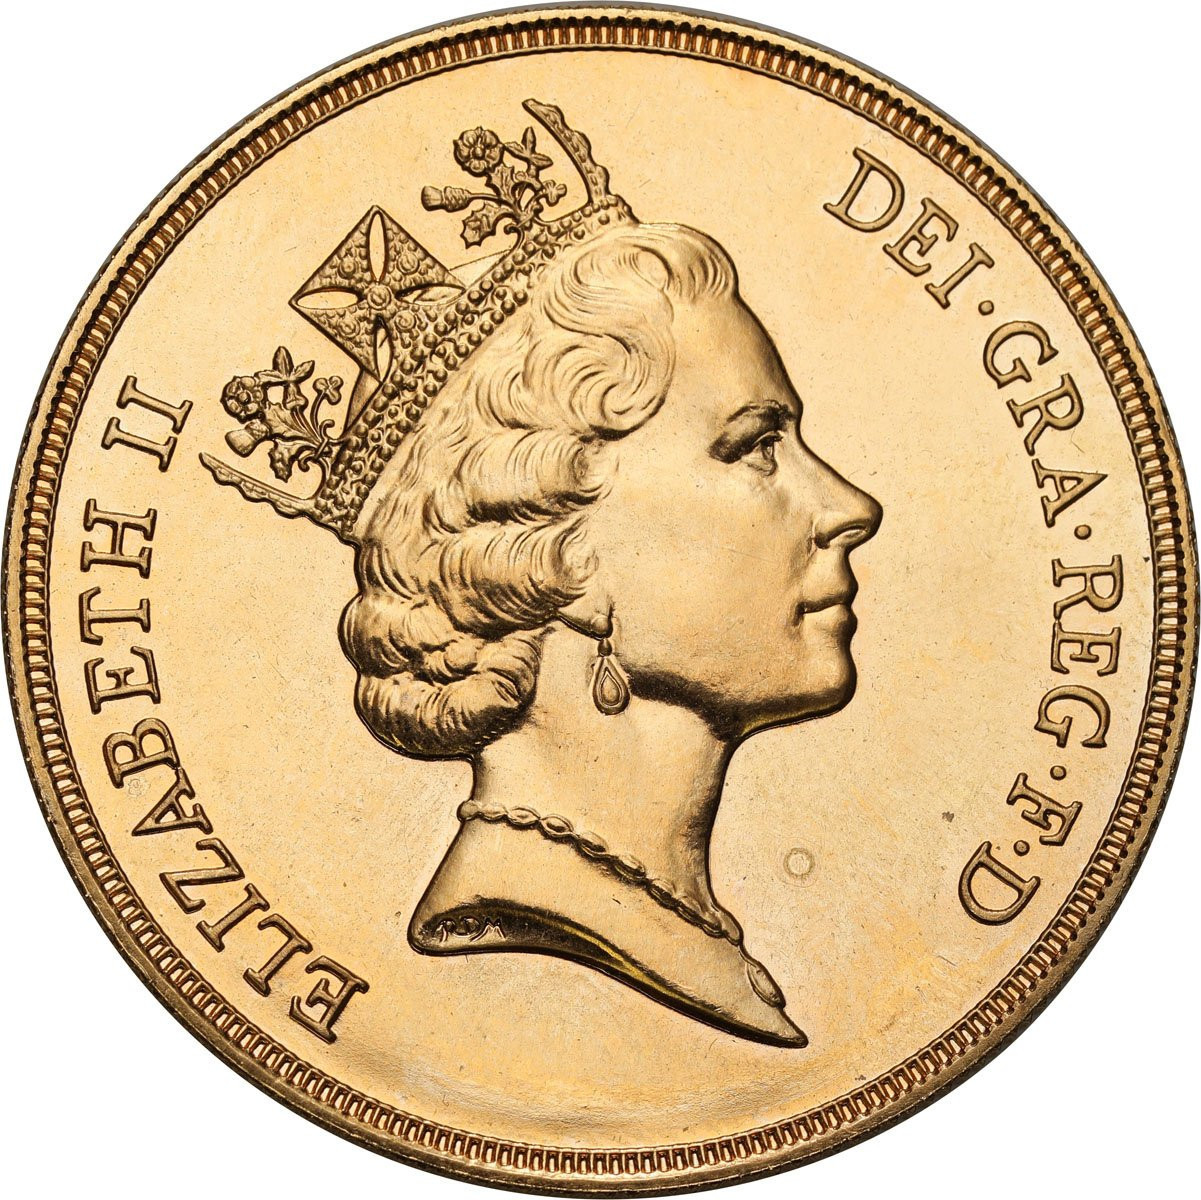 Wielka Brytania. Elżbieta II 5 funtów 1986 - PIĘKNE